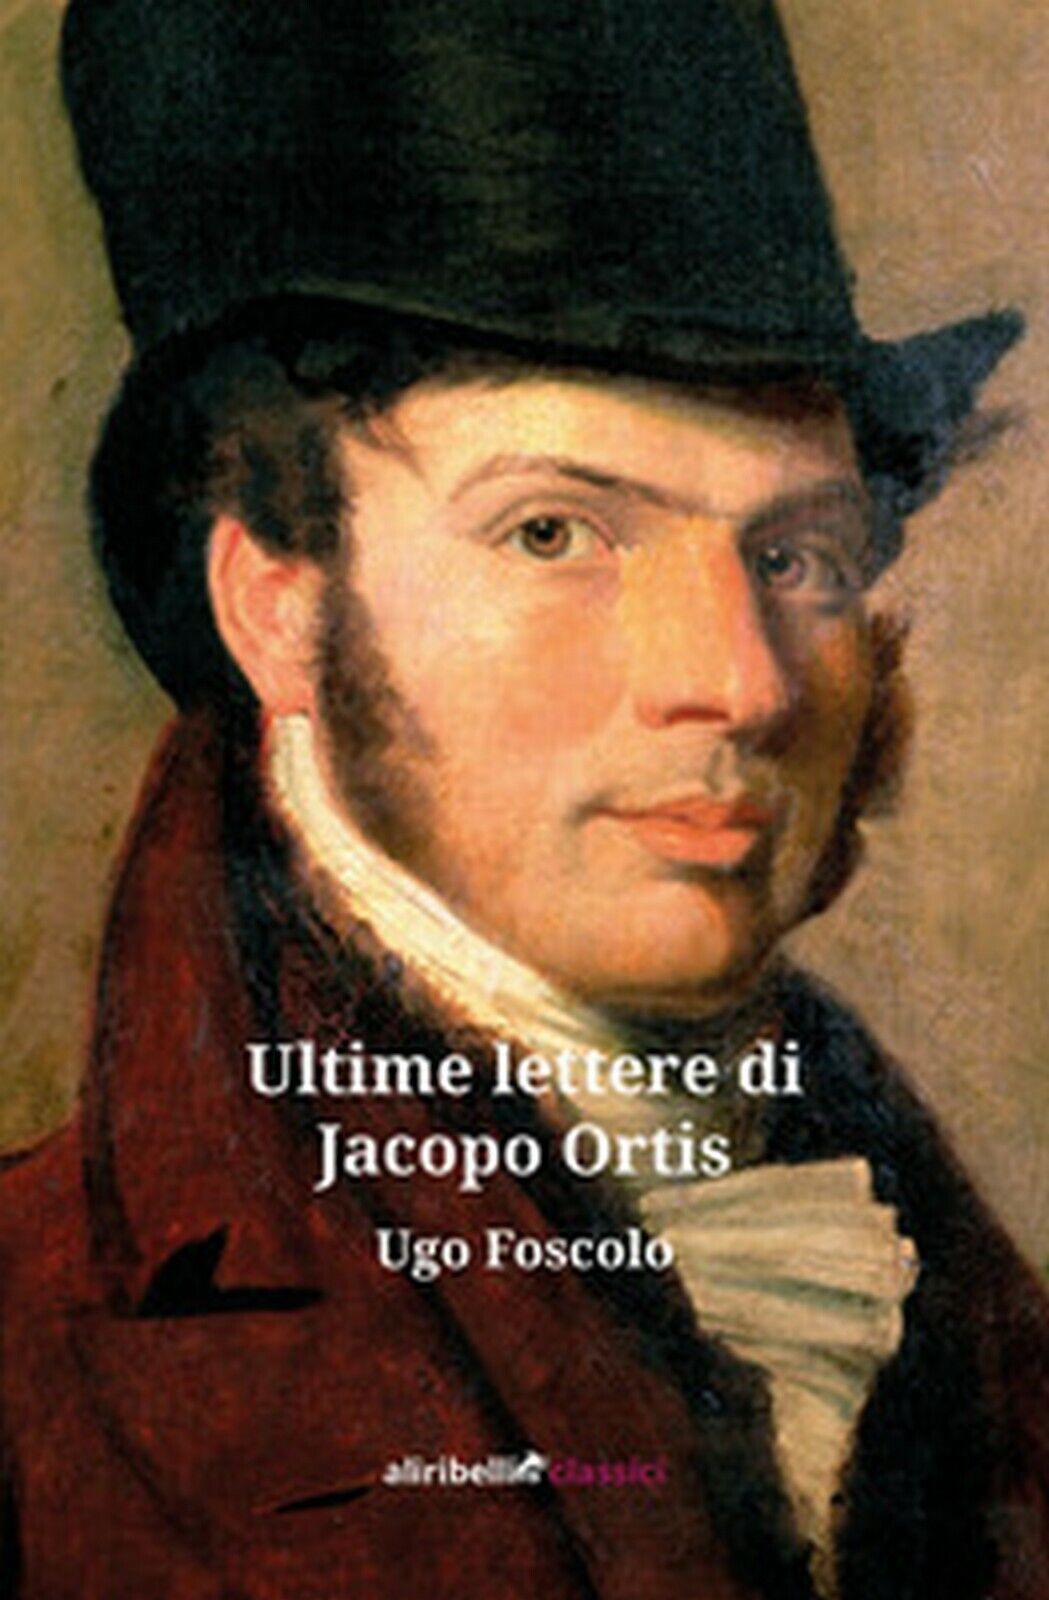 Ultime lettere di Jacopo Ortis  di Foscolo Ugo,  2019,  Ali Ribelli Edizioni